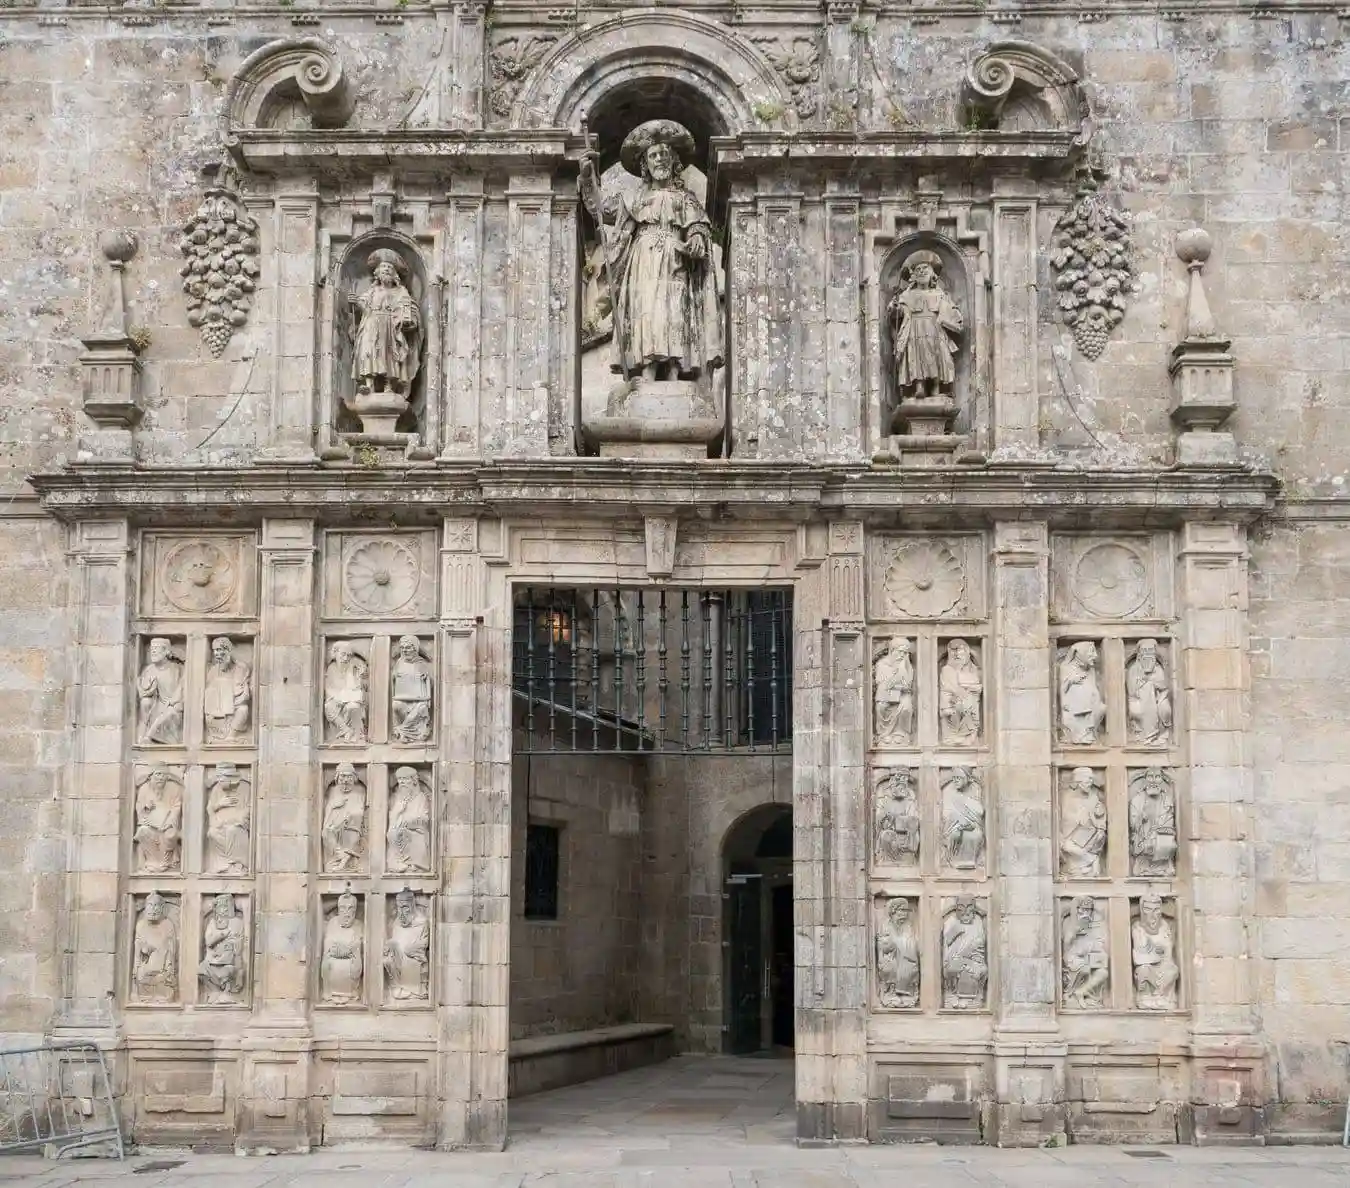 En la fachada de la Quintana, un –retablo- pétreo con hornacinas y piezas medievales del maestro Mateo rodean la Puerta.